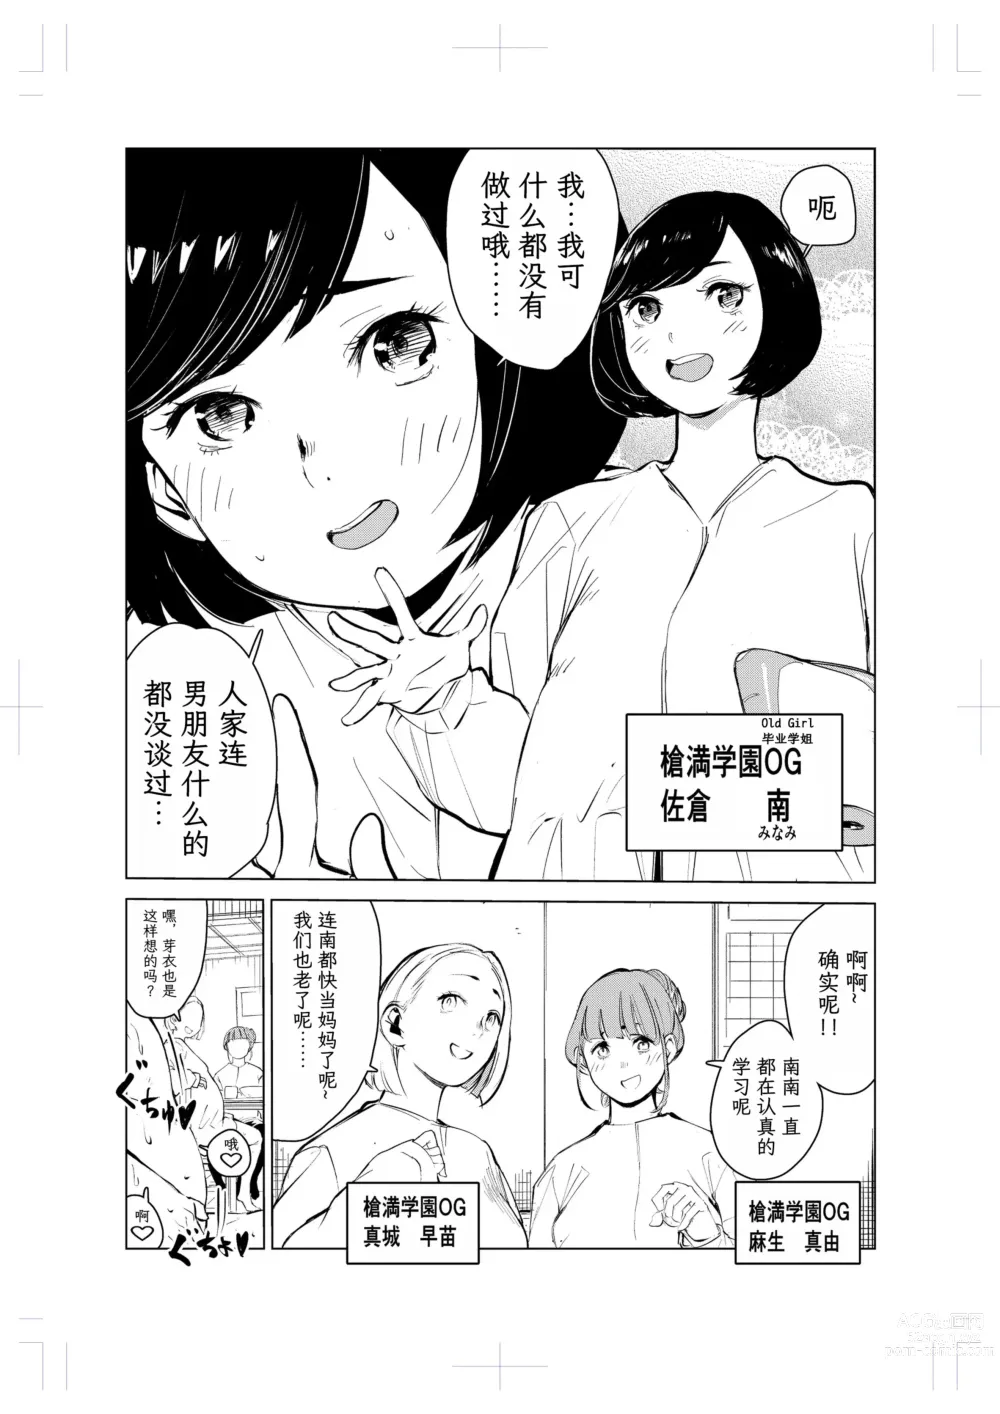 Page 4 of doujinshi 40-sai no Mahoutsukai 2